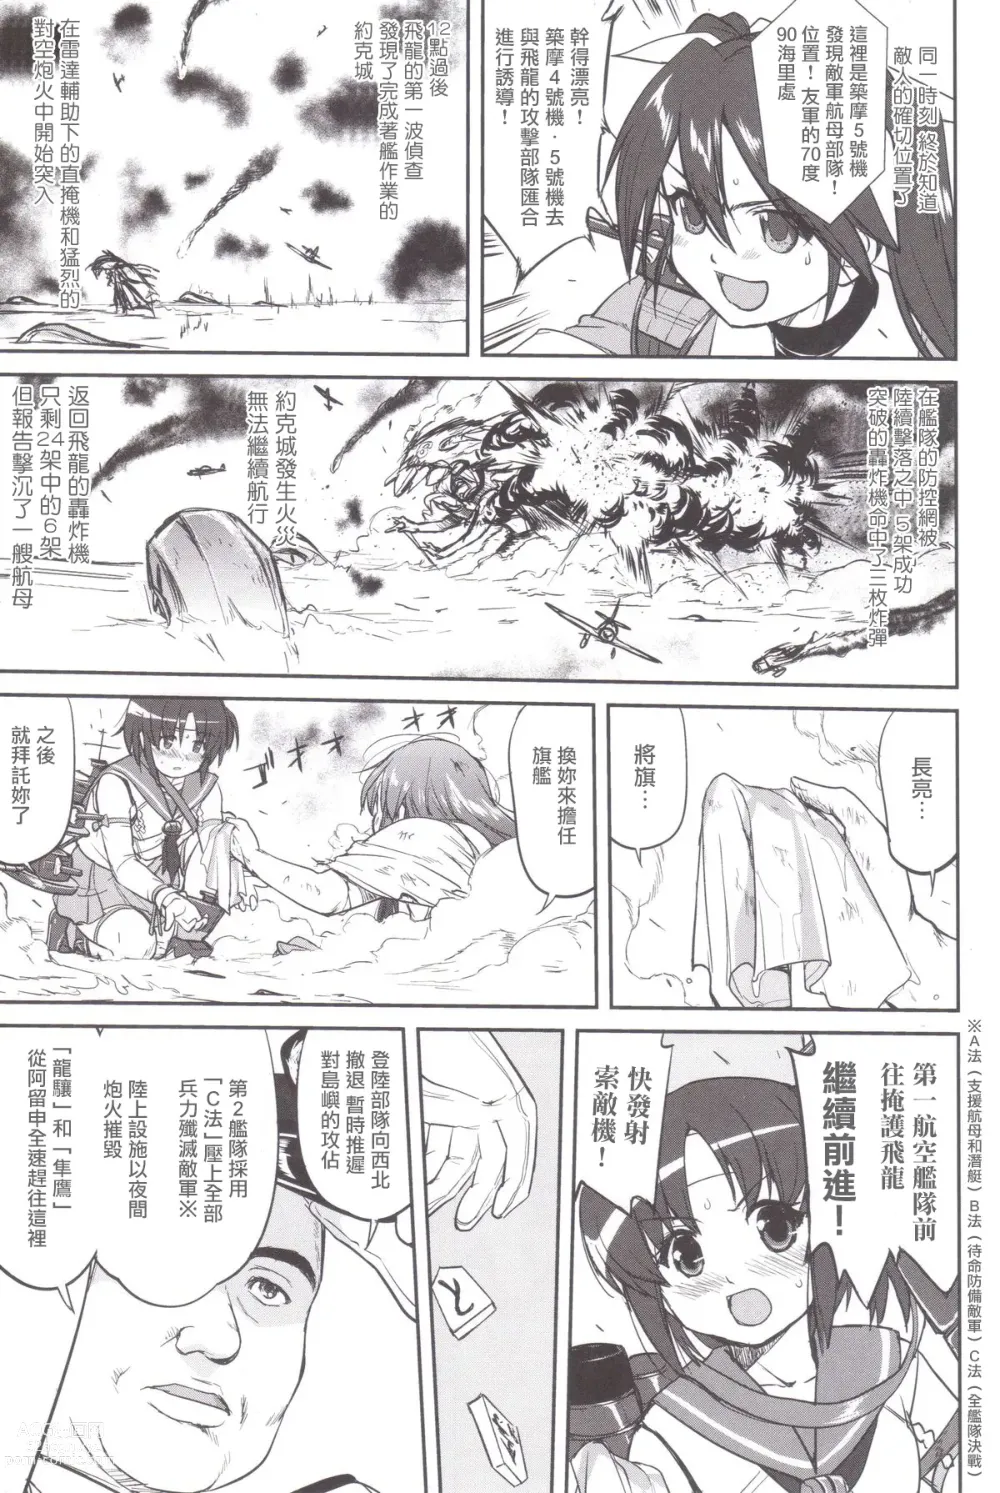 Page 48 of doujinshi Teitoku no Ketsudan MIDWAY